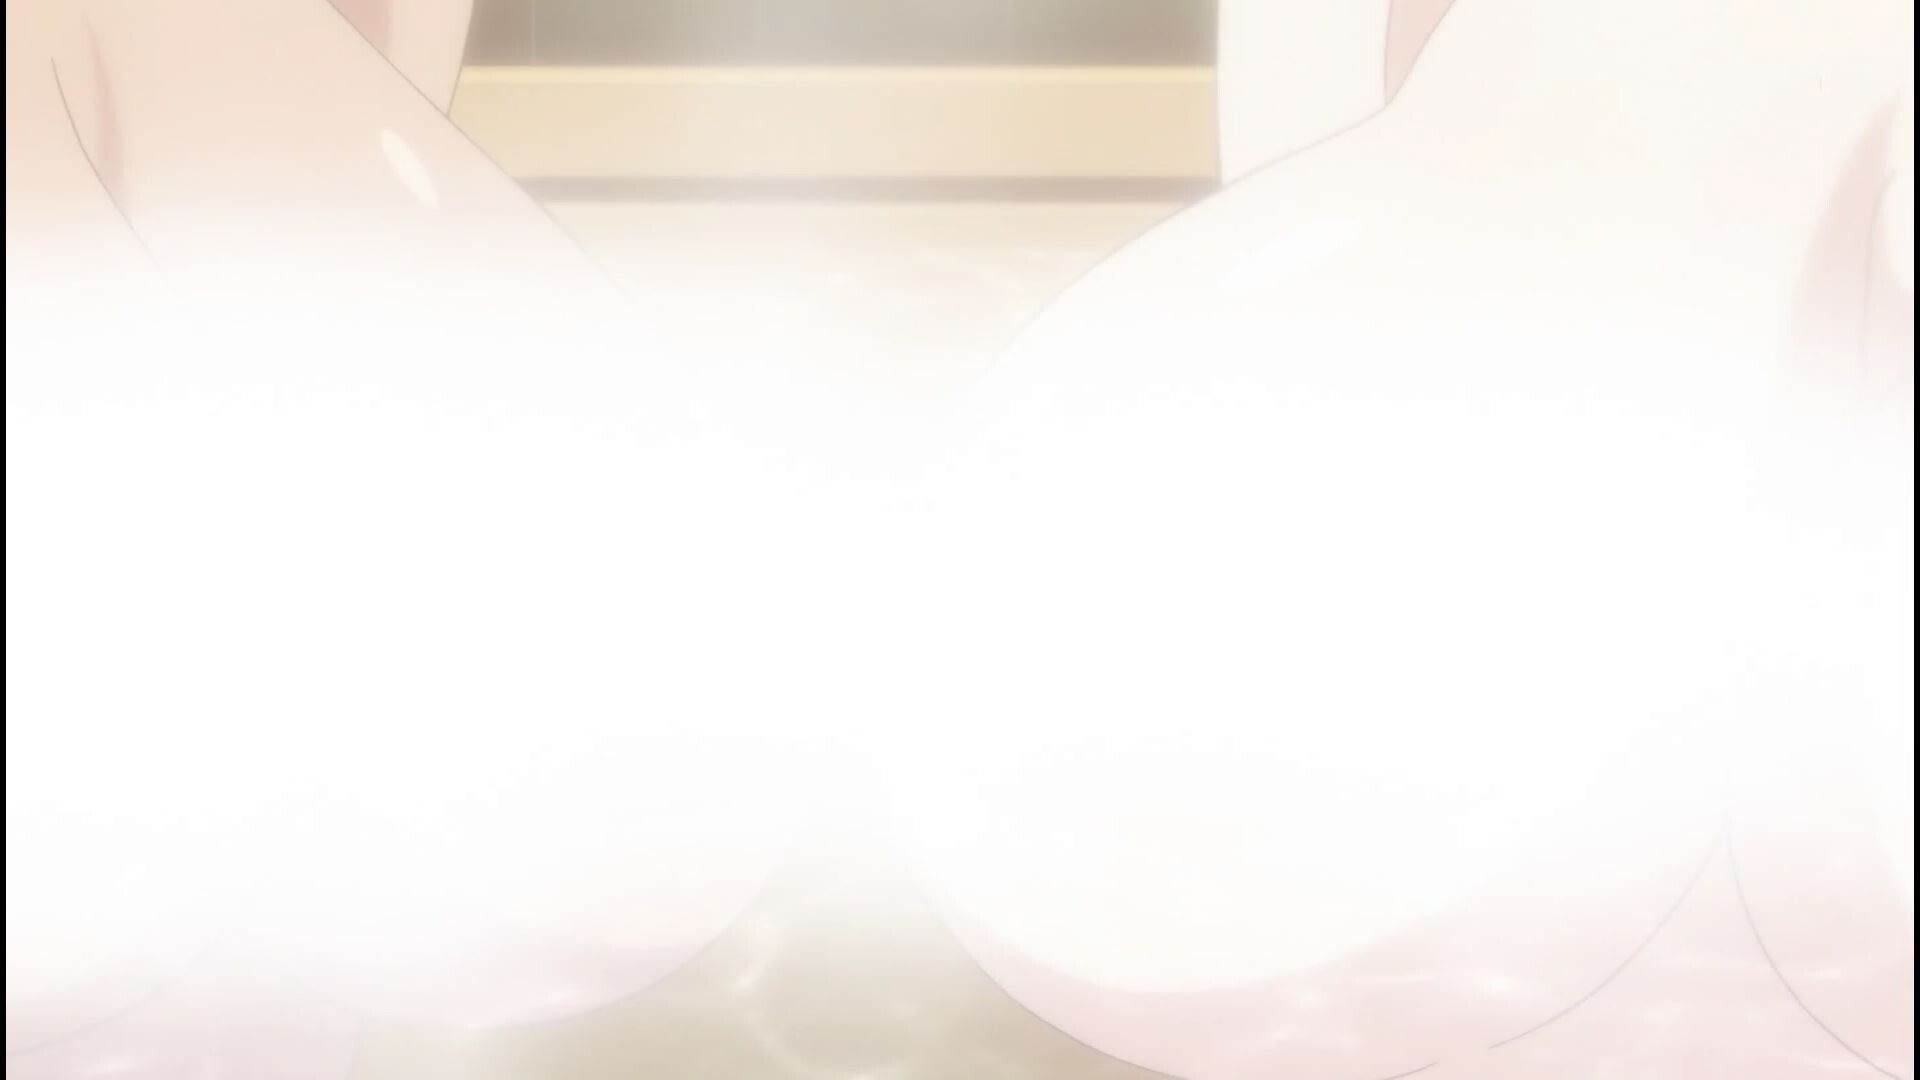 Anime [Kandagawa JETGIRLS] 8 episodes of girls erotic round-view bath bathing scene! 16